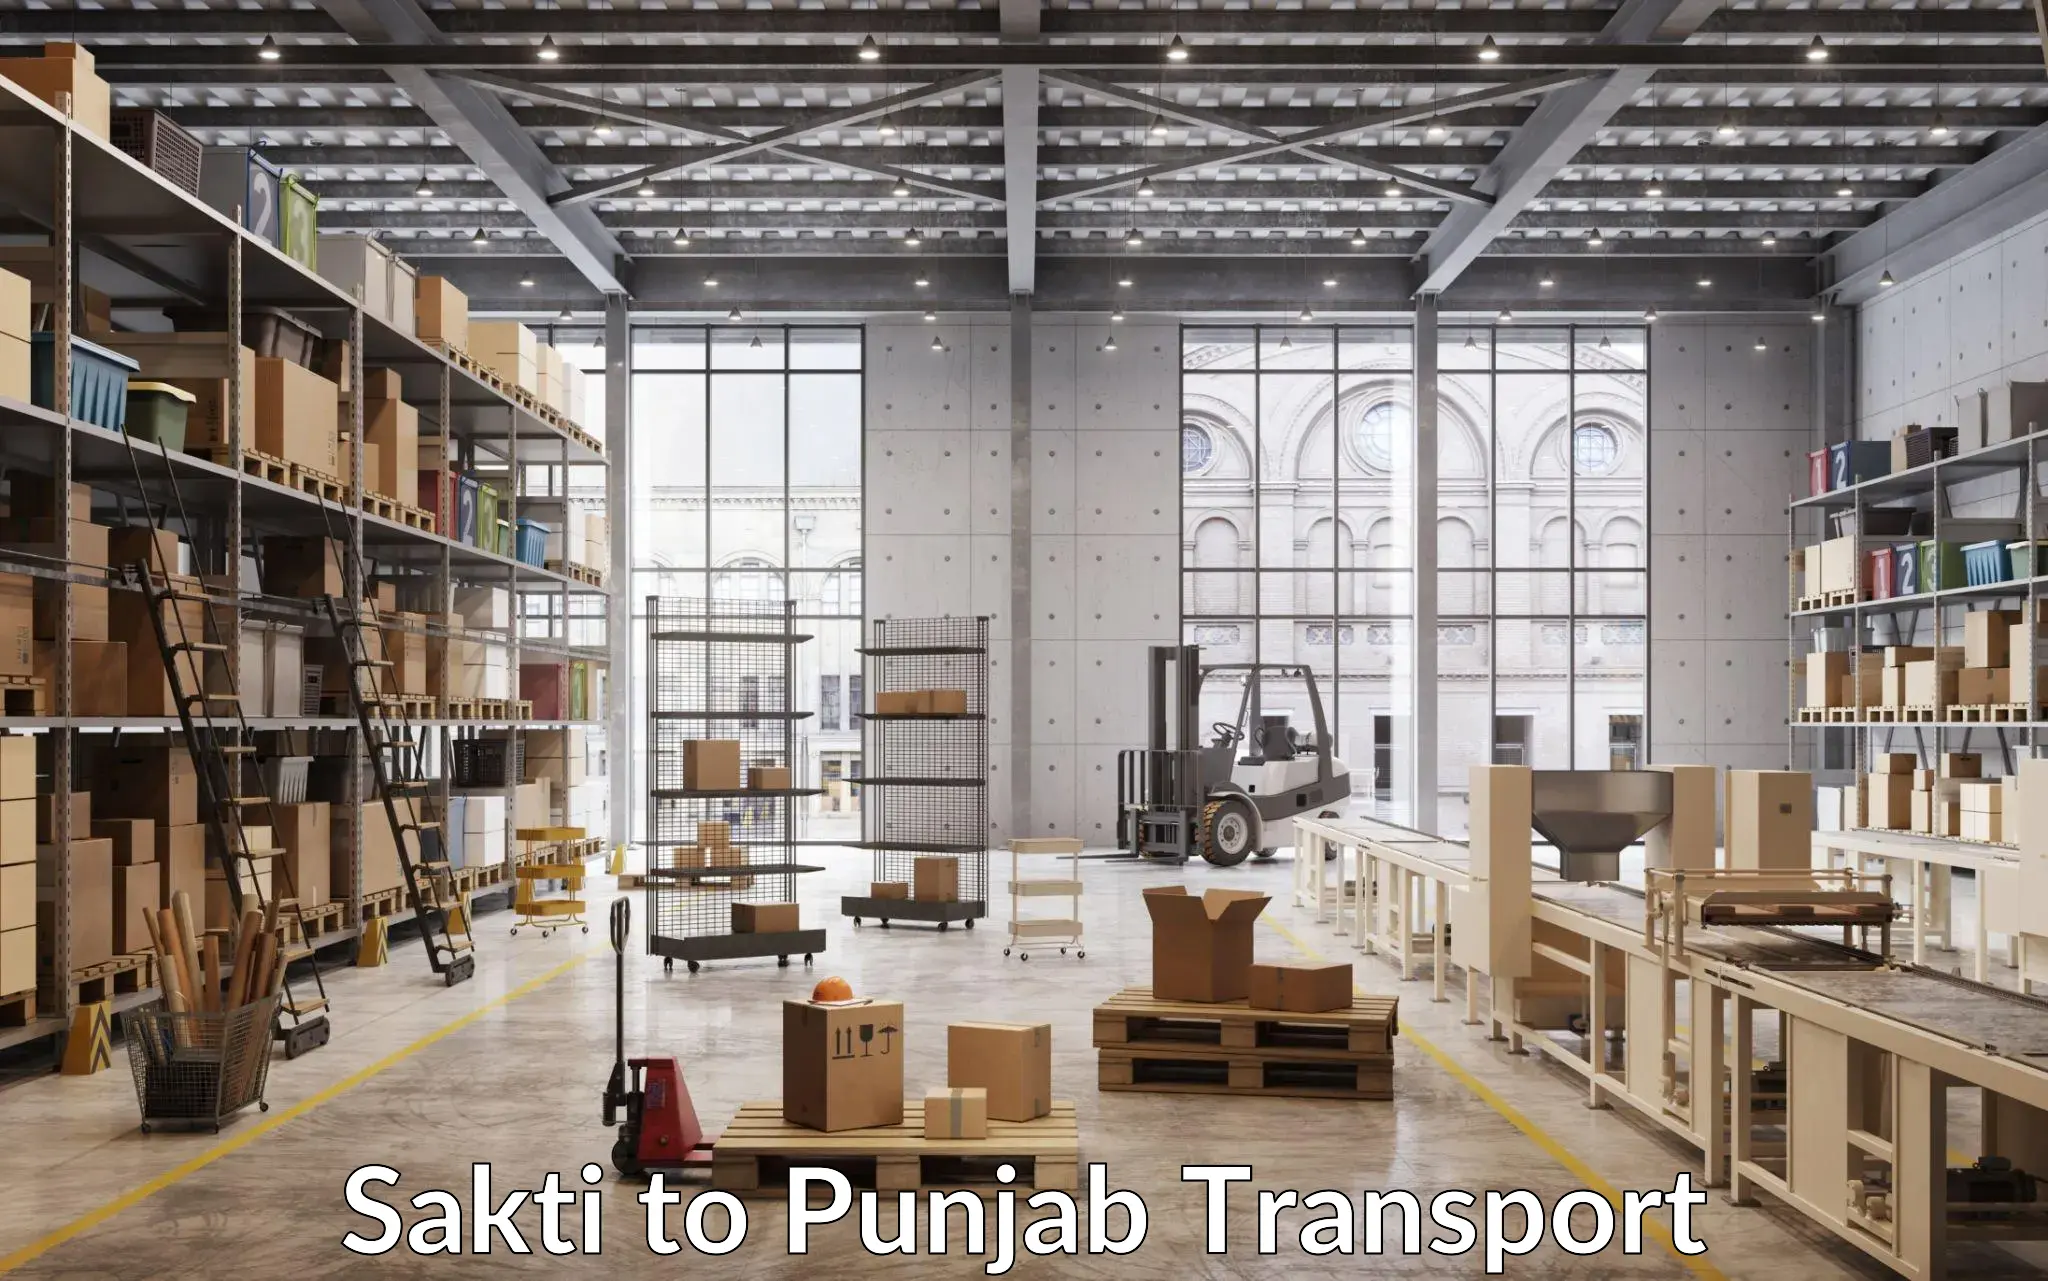 Commercial transport service Sakti to Jalandhar